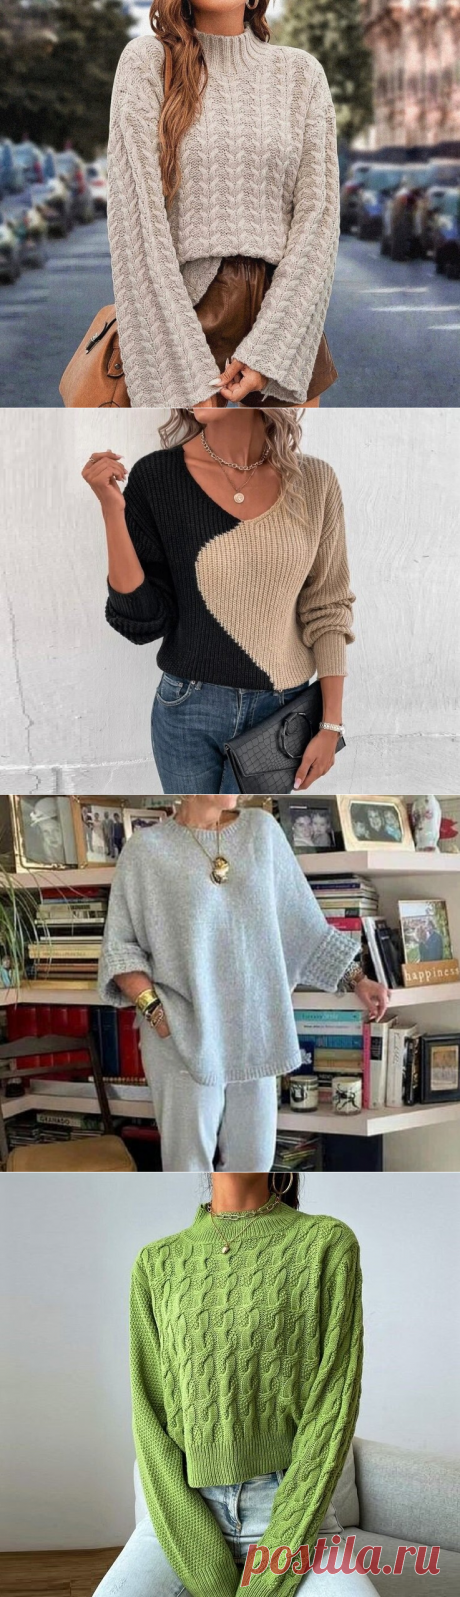 Модные и стильные! Подборка вязаных джемперов и пуловеров для любого возраста (32 идеи) | Идеи рукоделия | Дзен